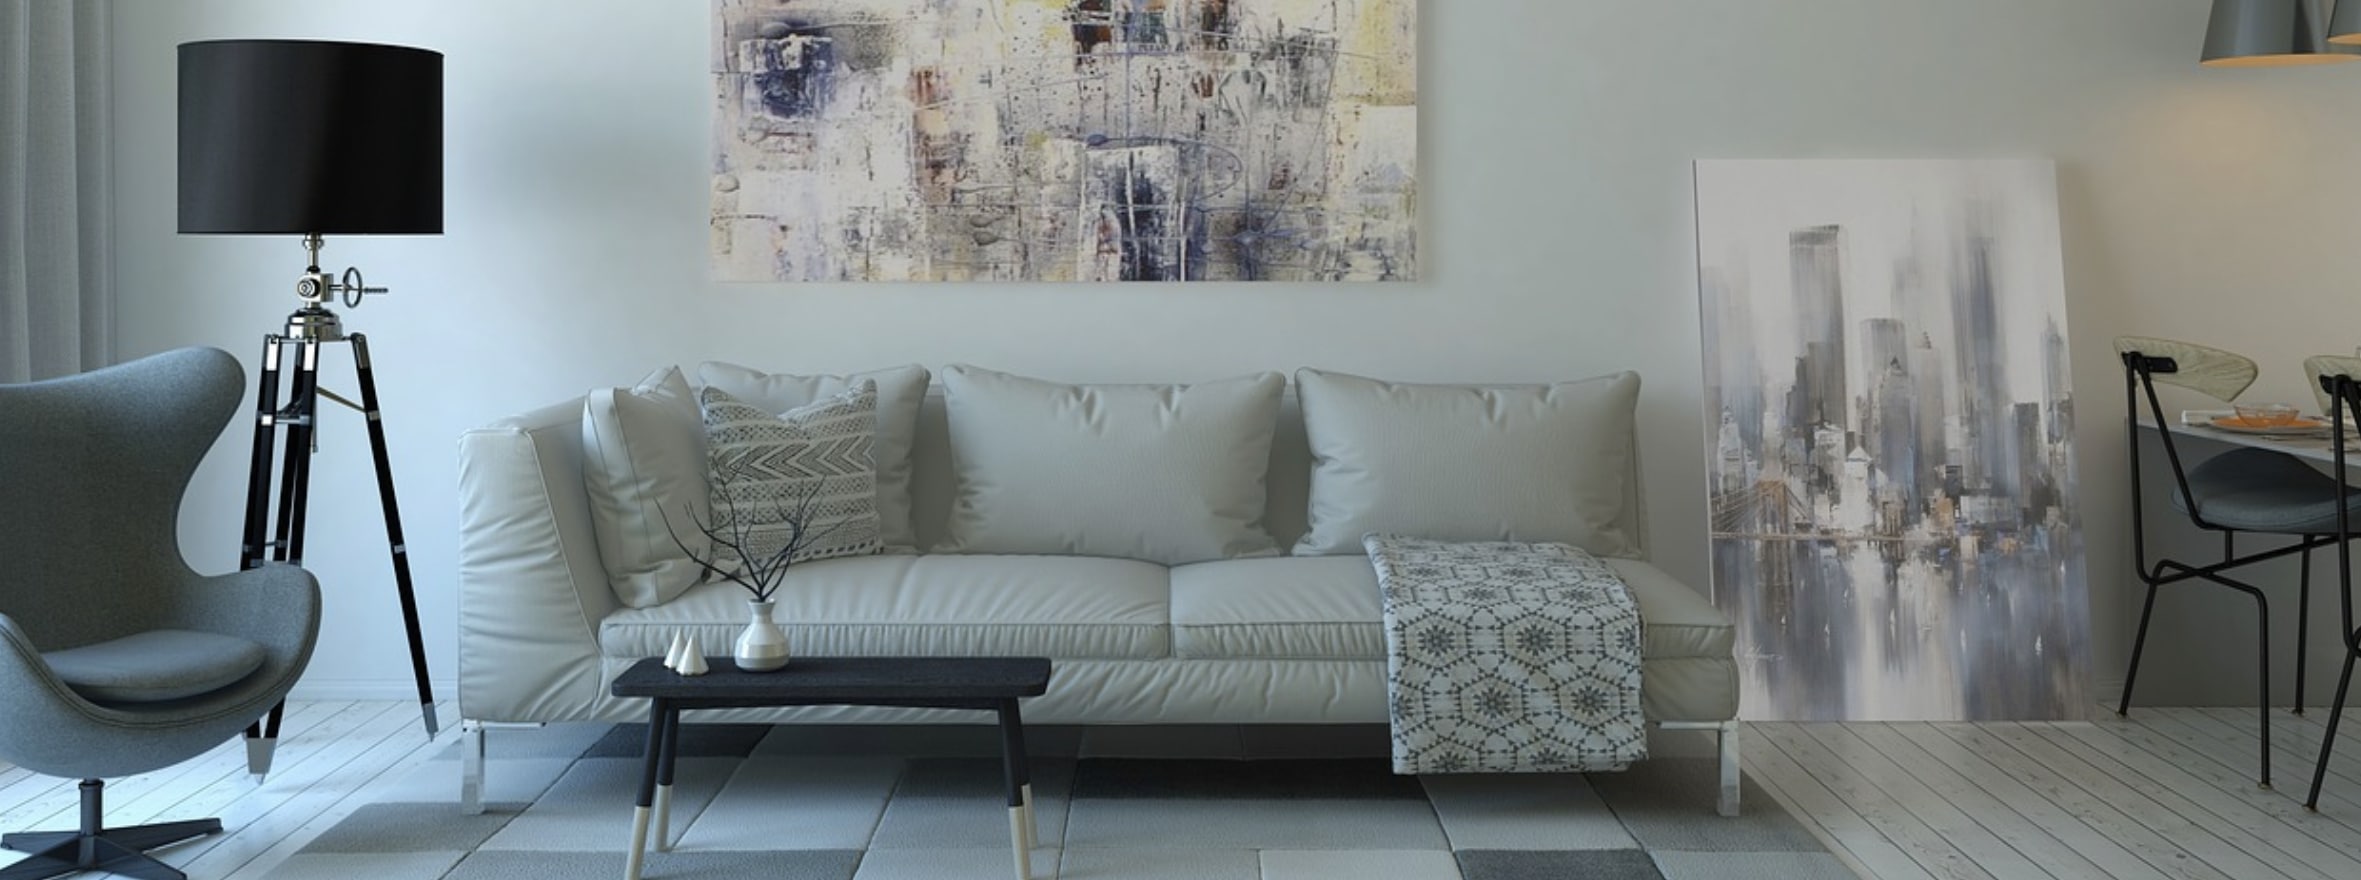 Obývací pokoj – co do něj patří a jak ho zařídit?